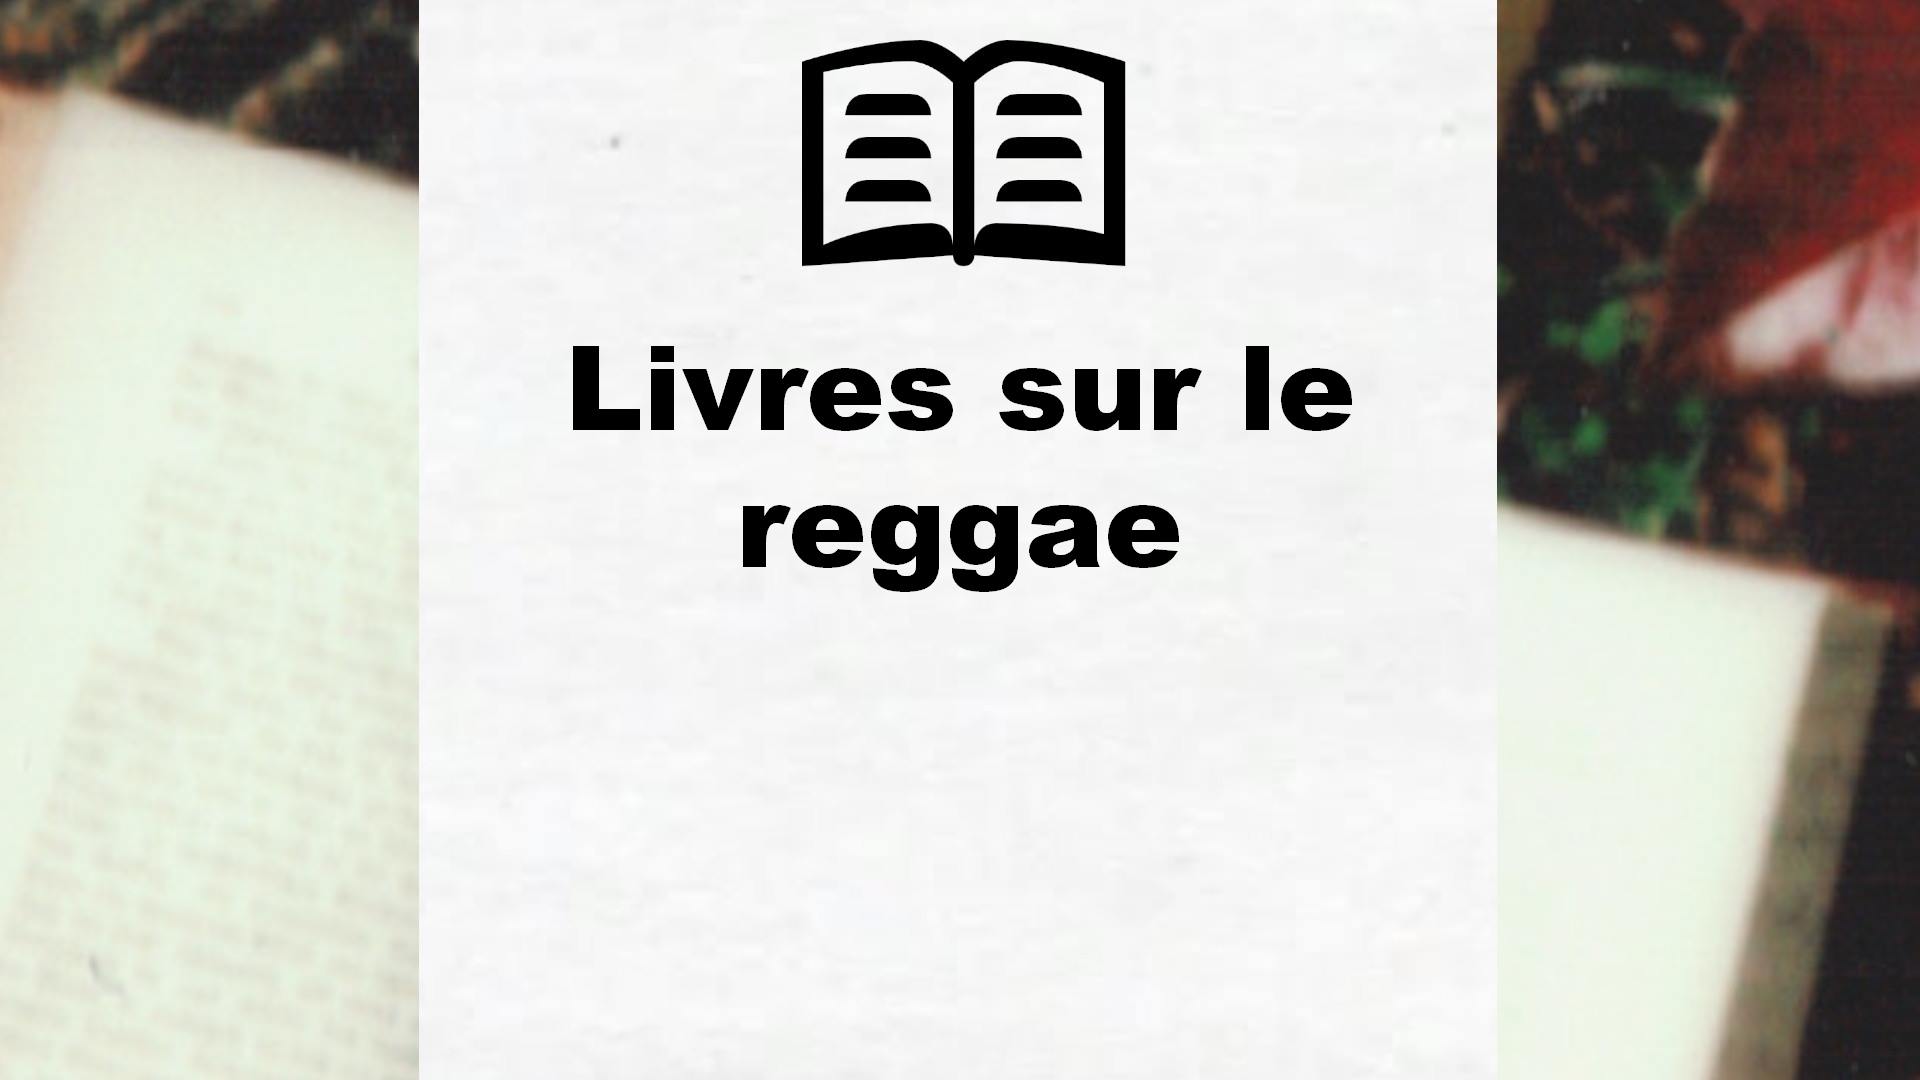 Livres sur le reggae